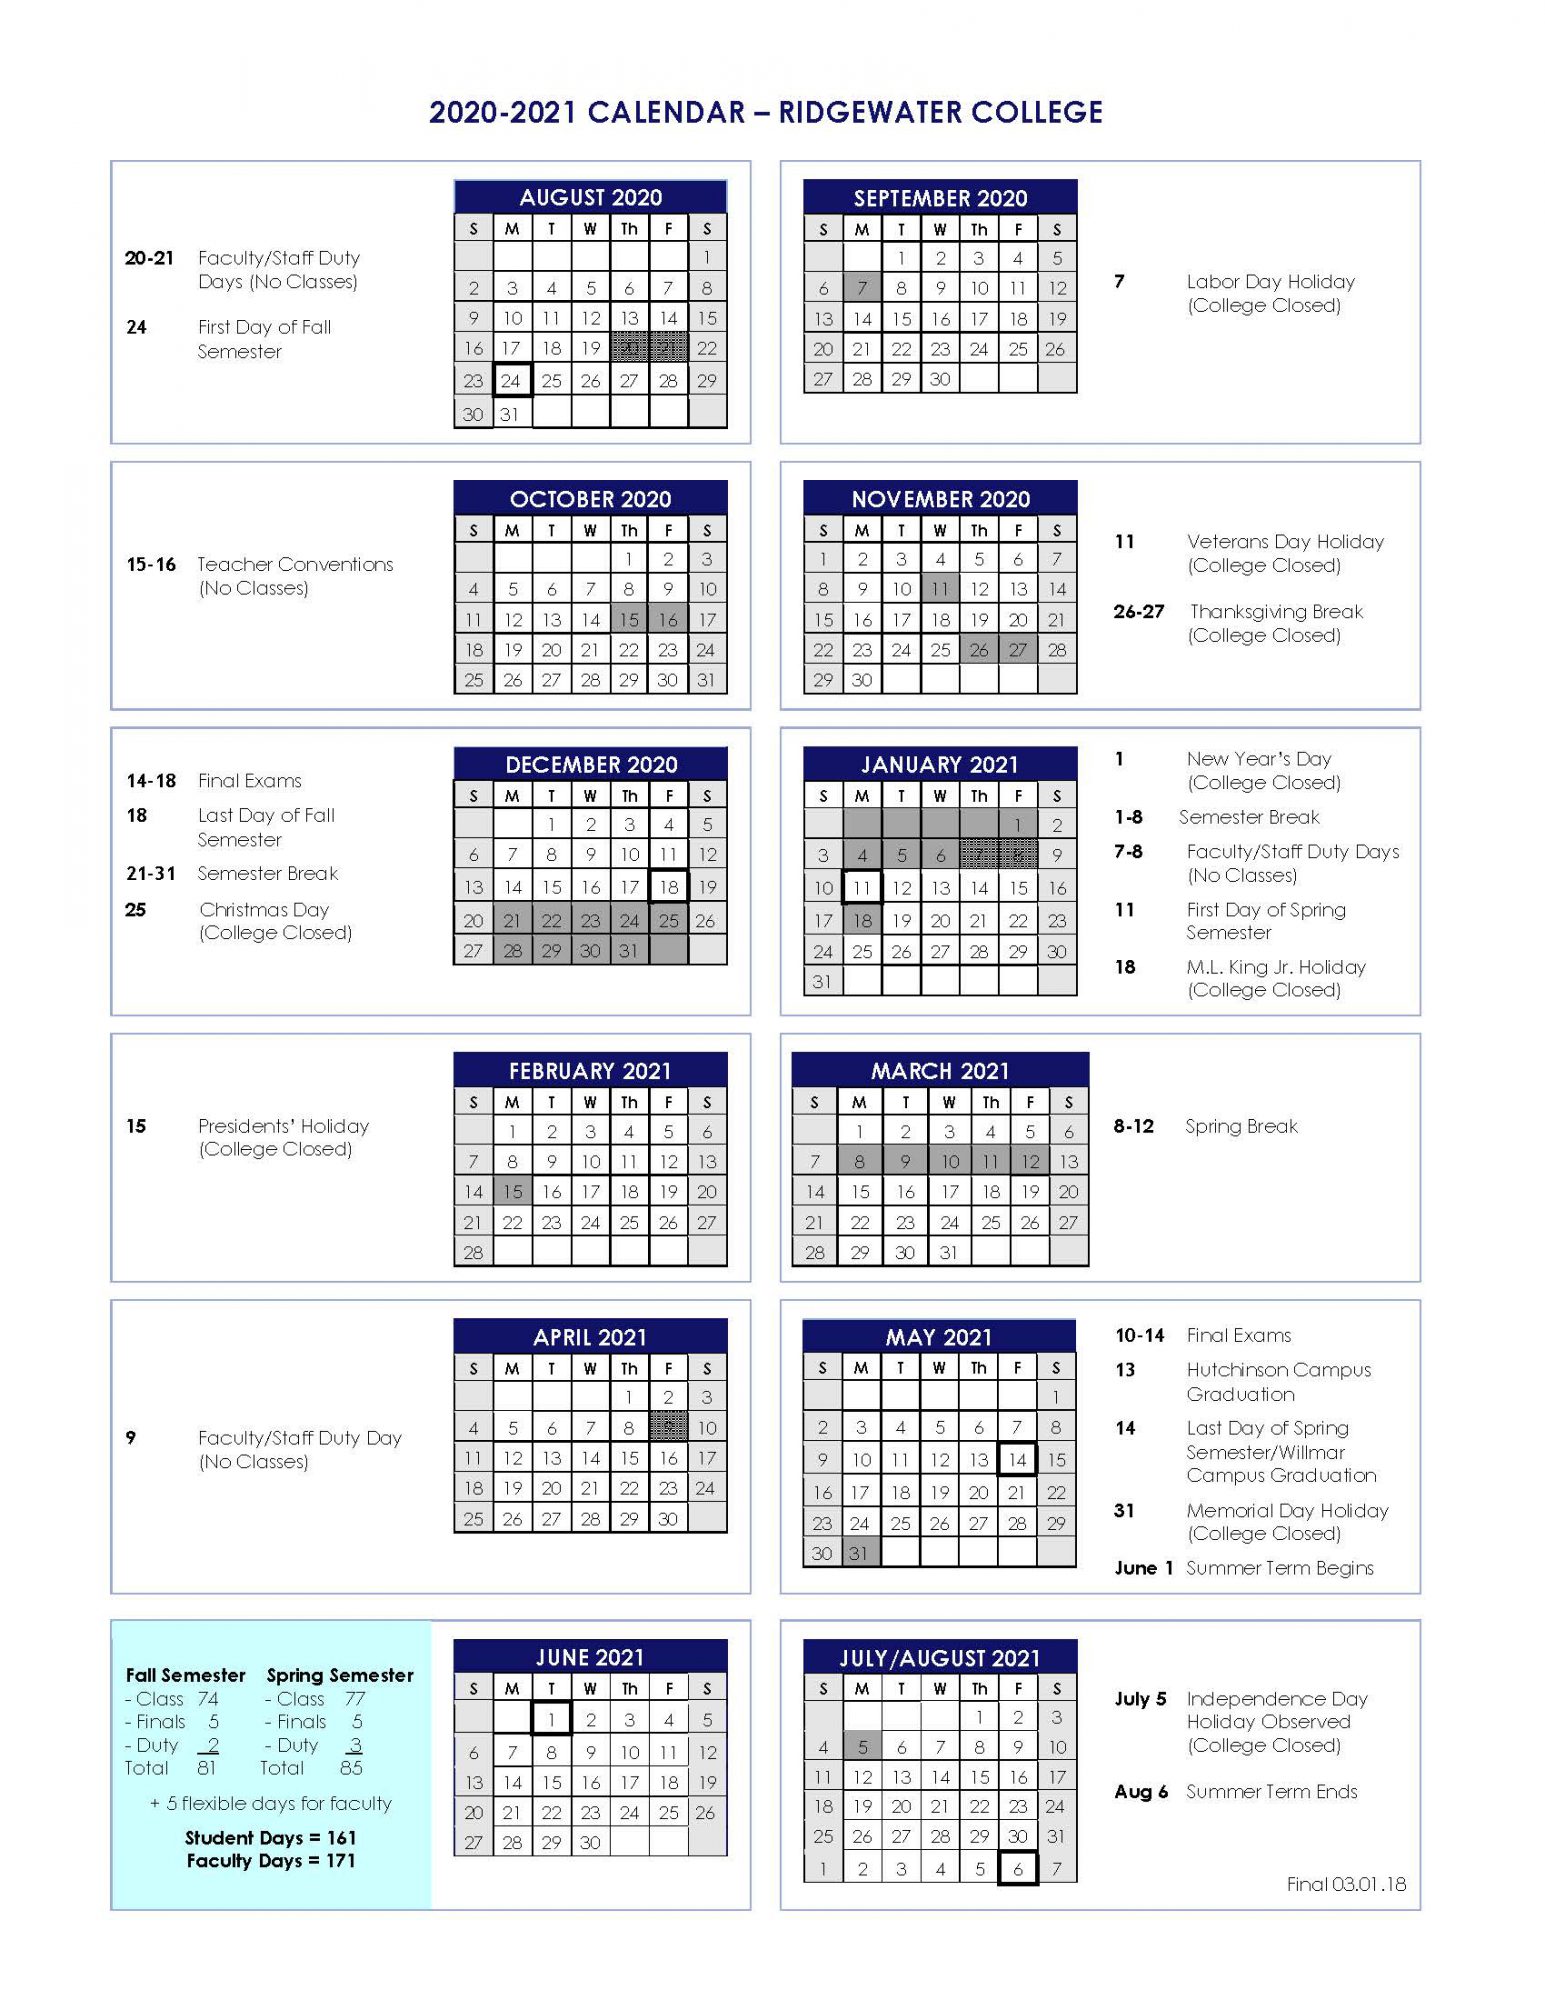 umn-twin-cities-academic-calendar-customize-and-print